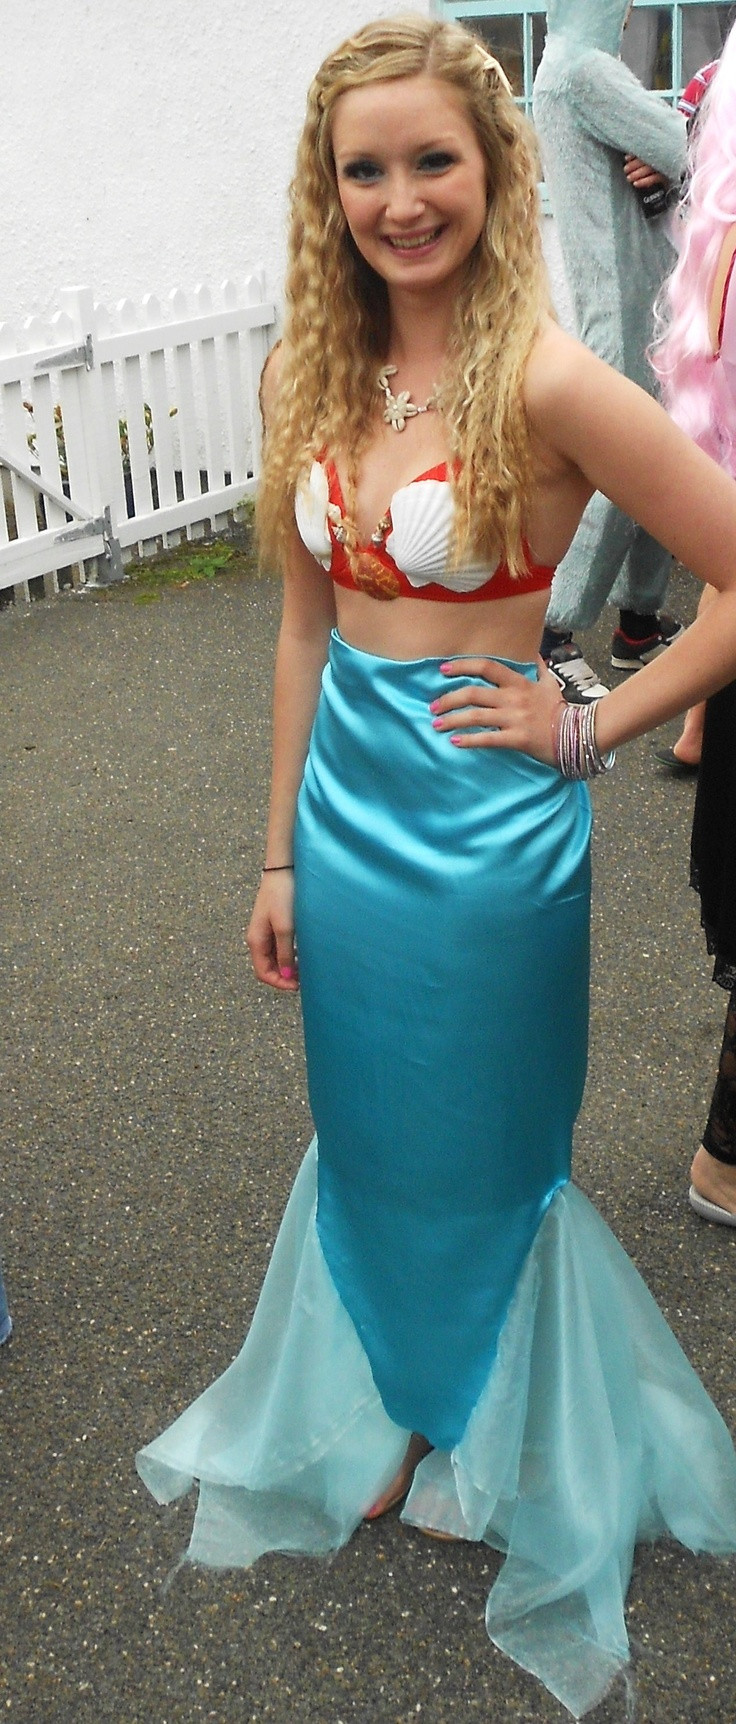 DIY Little Mermaid Costume
 Best 25 Diy mermaid costume ideas on Pinterest